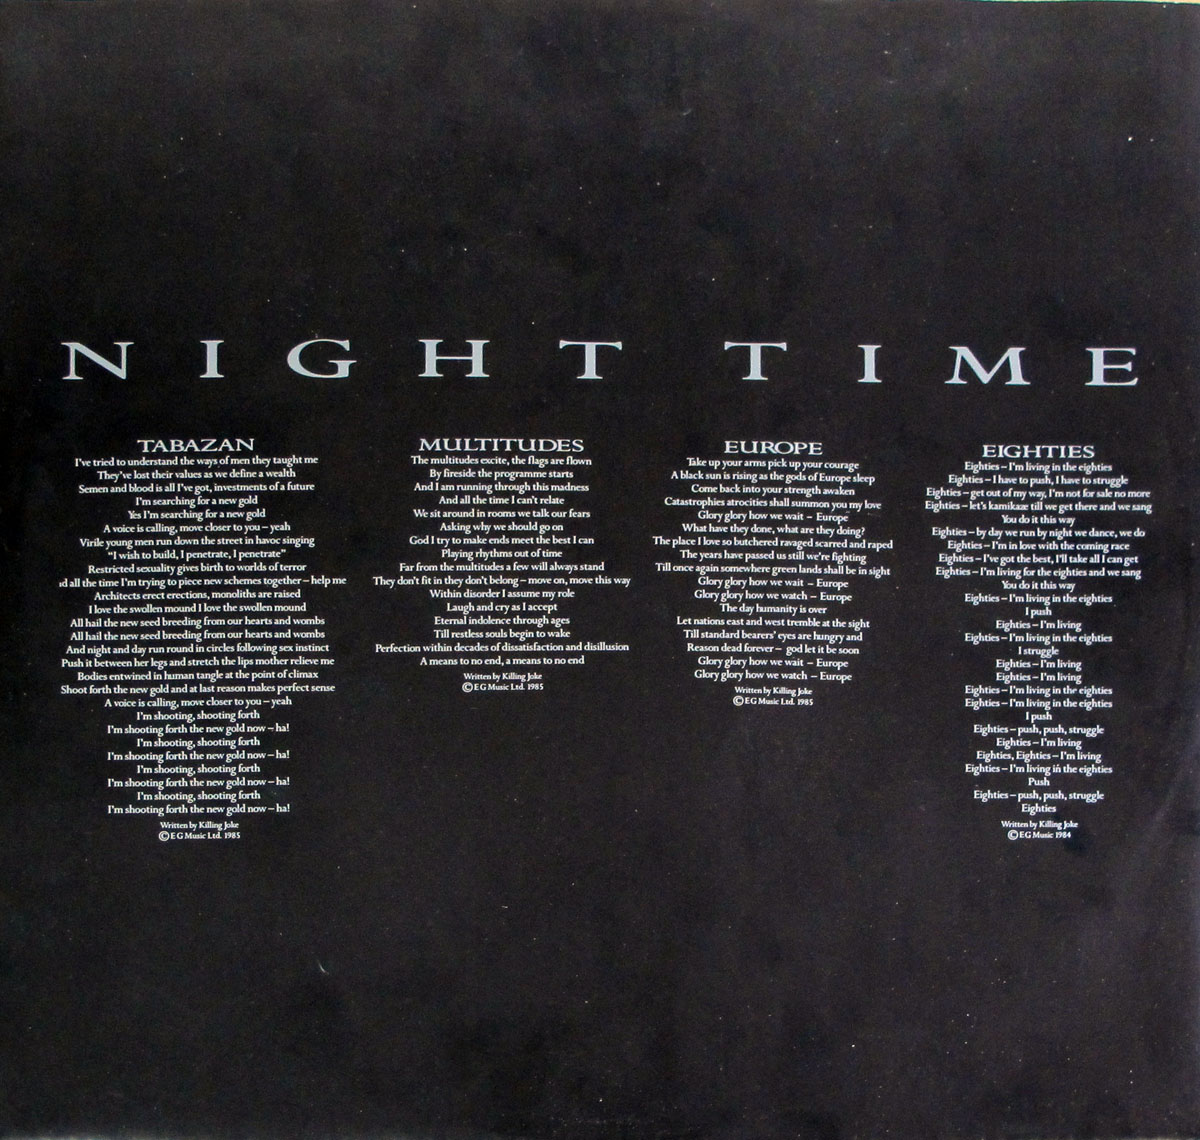 Lyrics of "Night Time" printed on the custom inner sleeve  